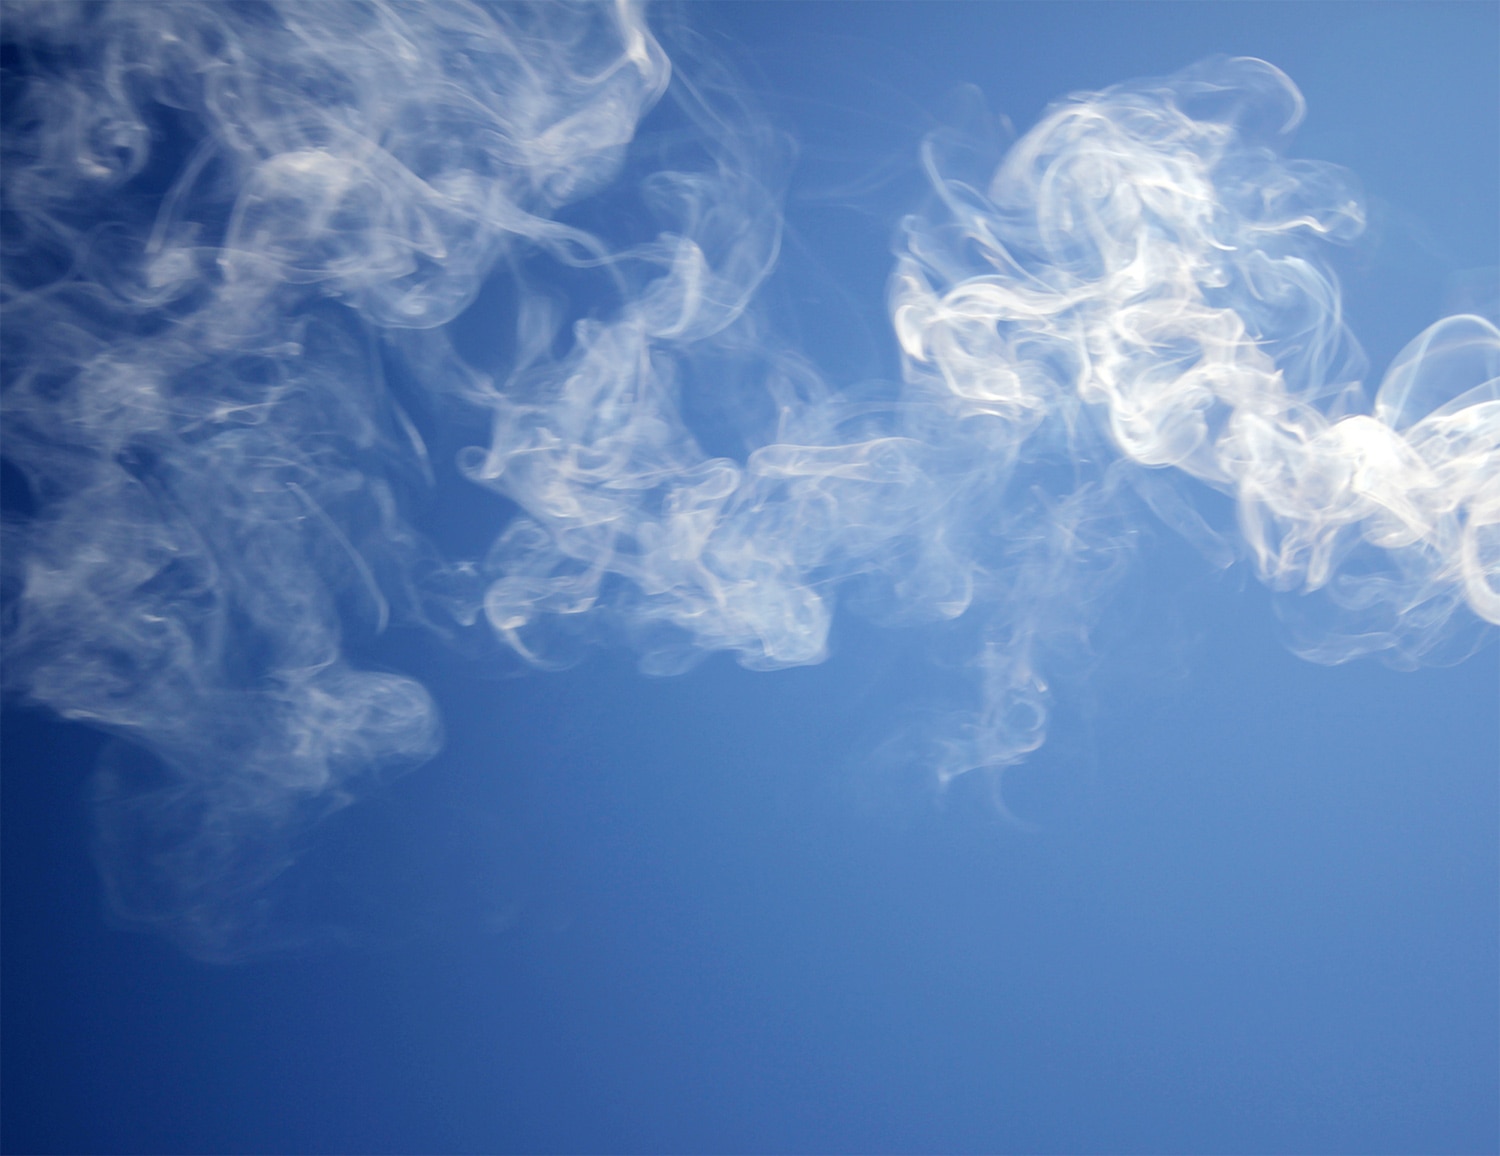 The E-Cigarette Regulatory Landscape